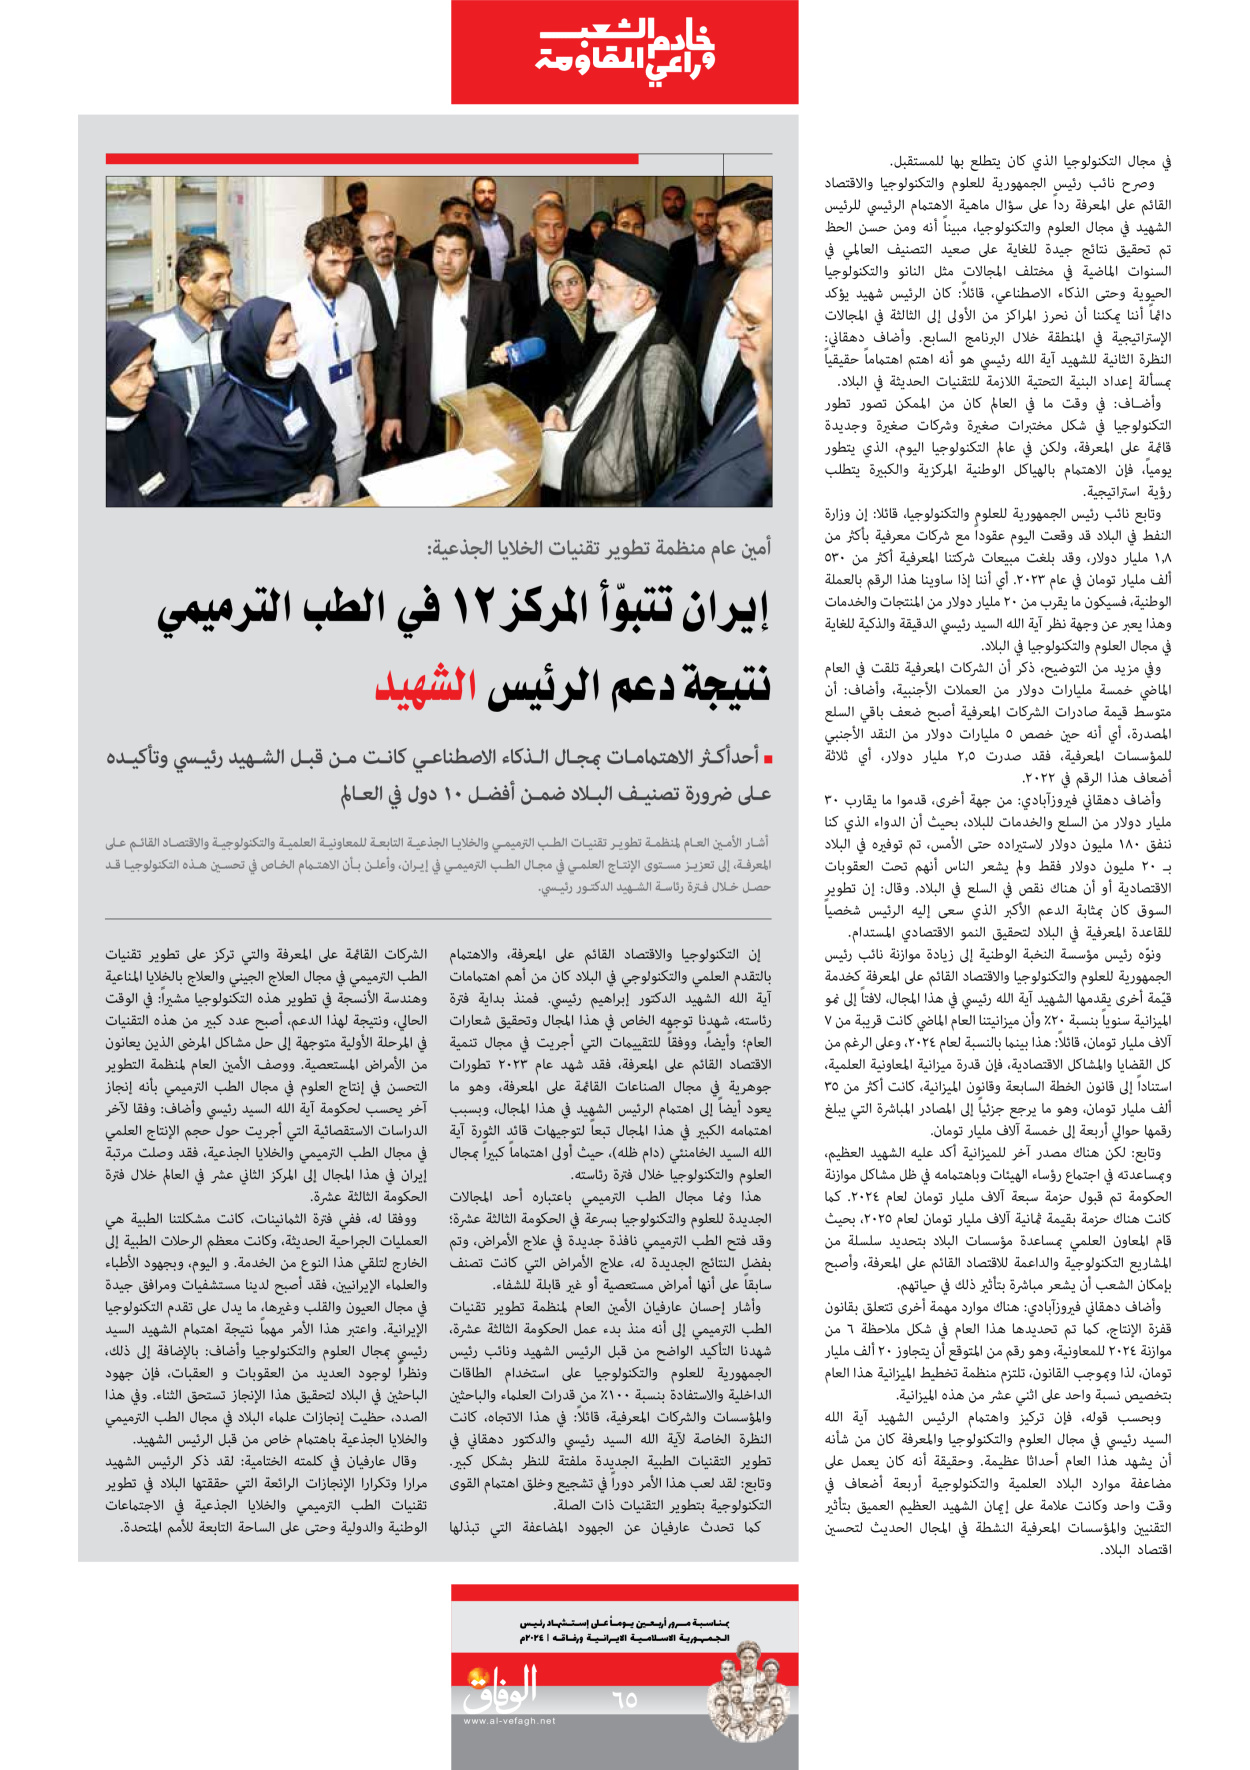 صحیفة ایران الدولیة الوفاق - ملحق ویژه نامه چهلم شهید رییسی - ٢٩ يونيو ٢٠٢٤ - الصفحة ٦٥